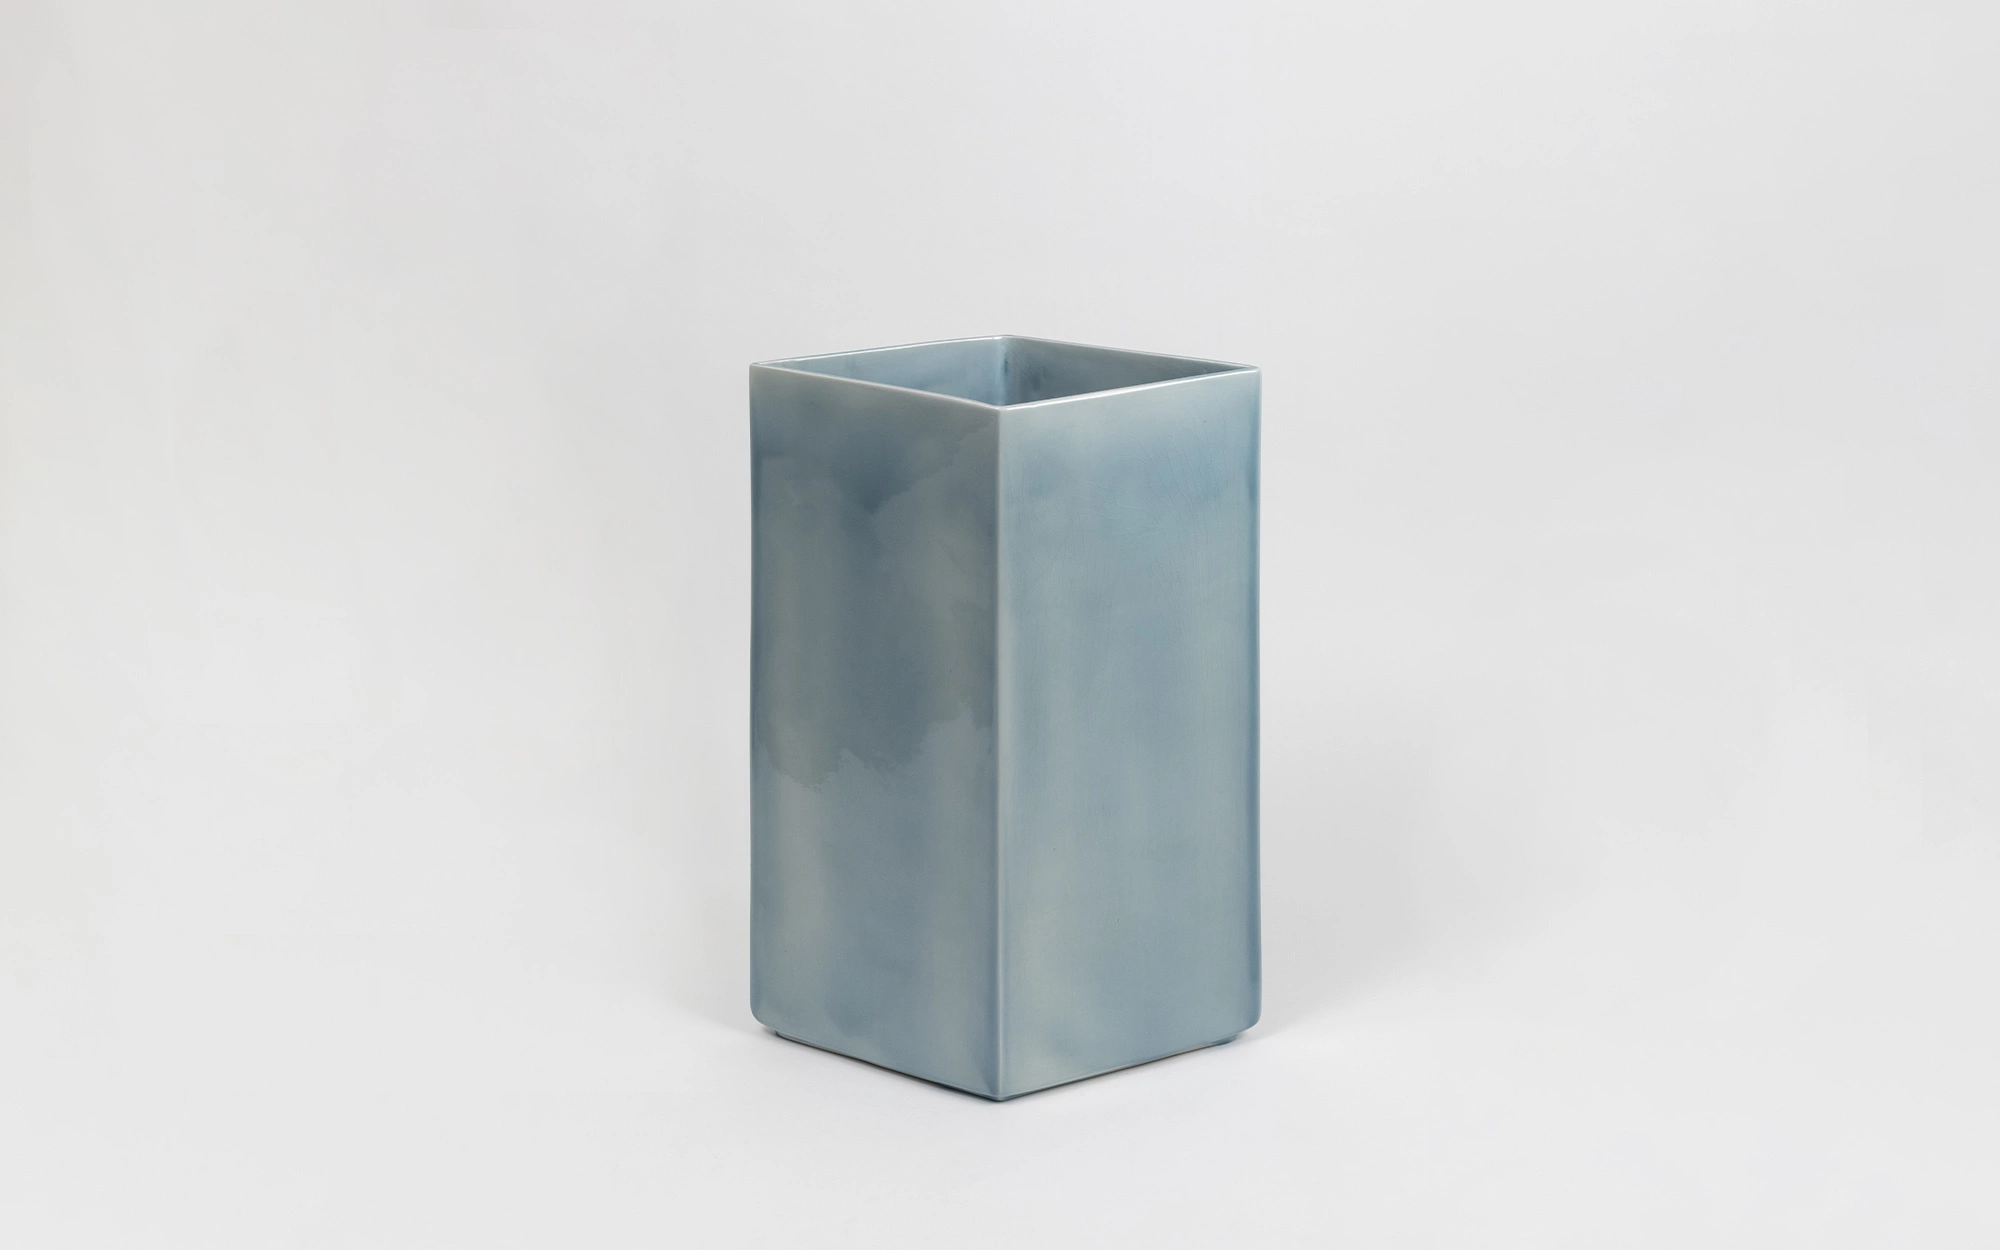 Vase Losange 67 blue - Ronan & Erwan Bouroullec - Stool - Galerie kreo